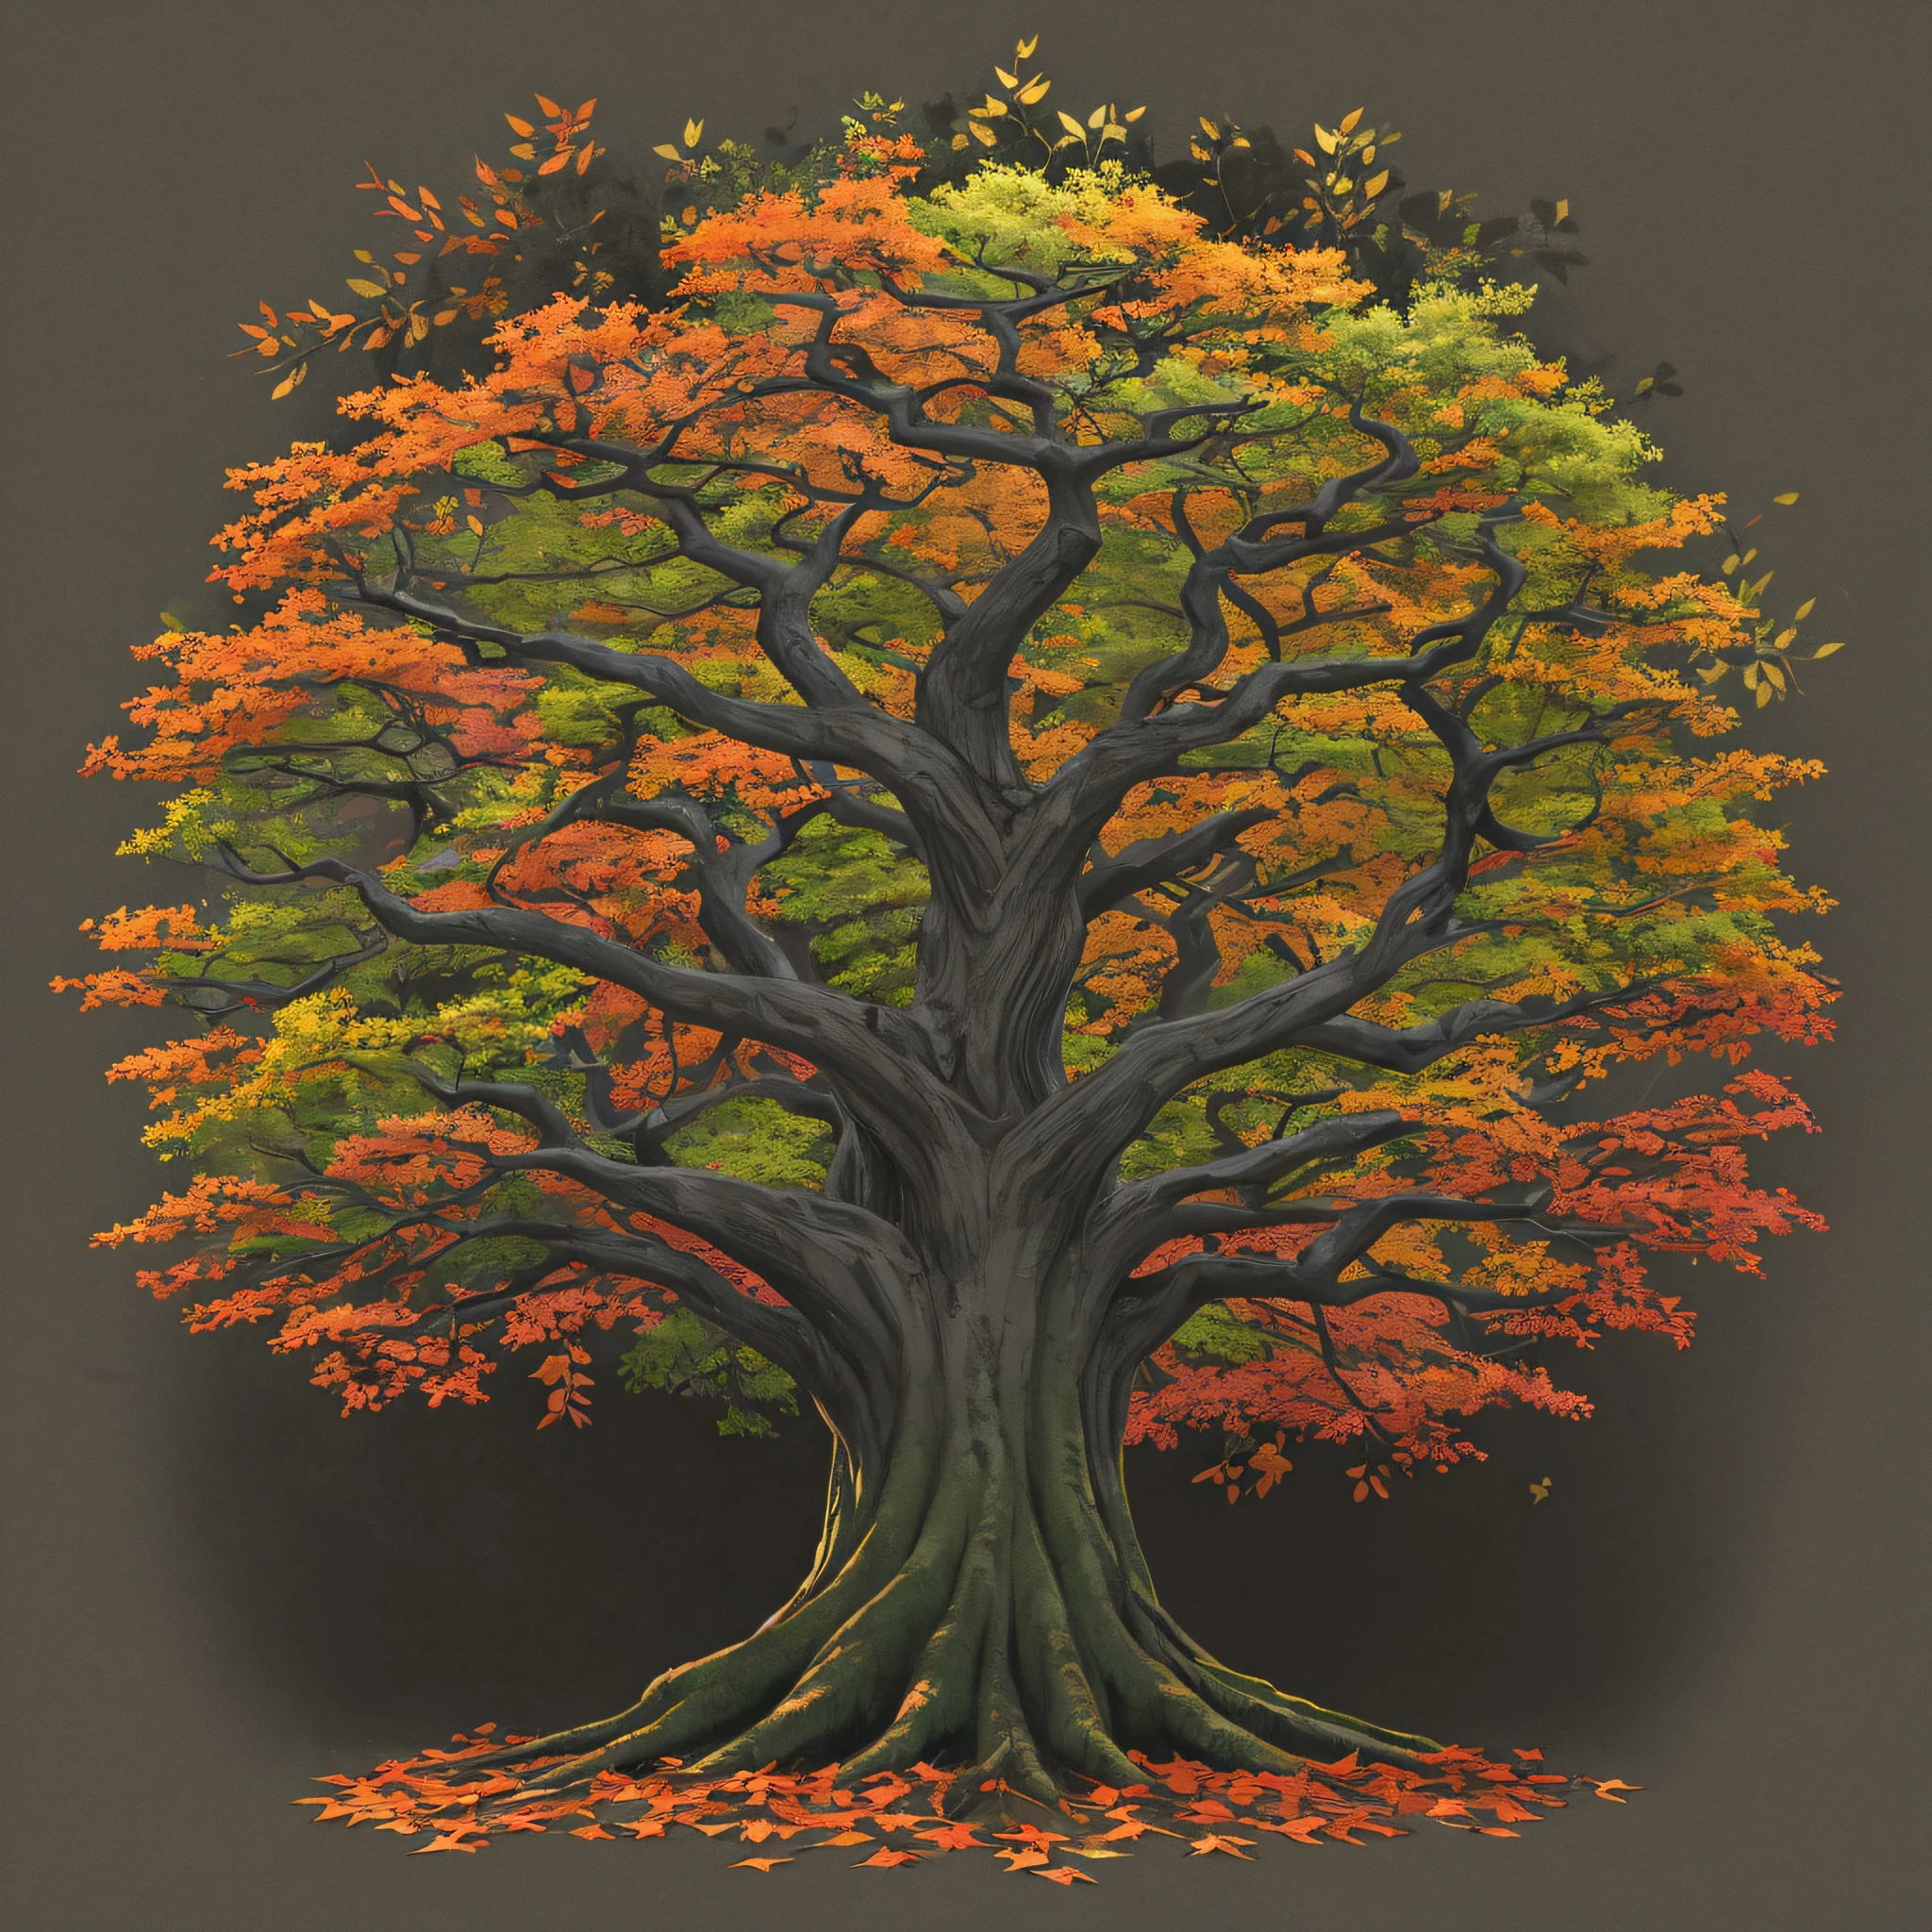 Baum des Lebens, Laubbaum, thick trunk, mit bunten Blättern und Blüten, dunkler Hintergrund, Nachtaktiv, grau.